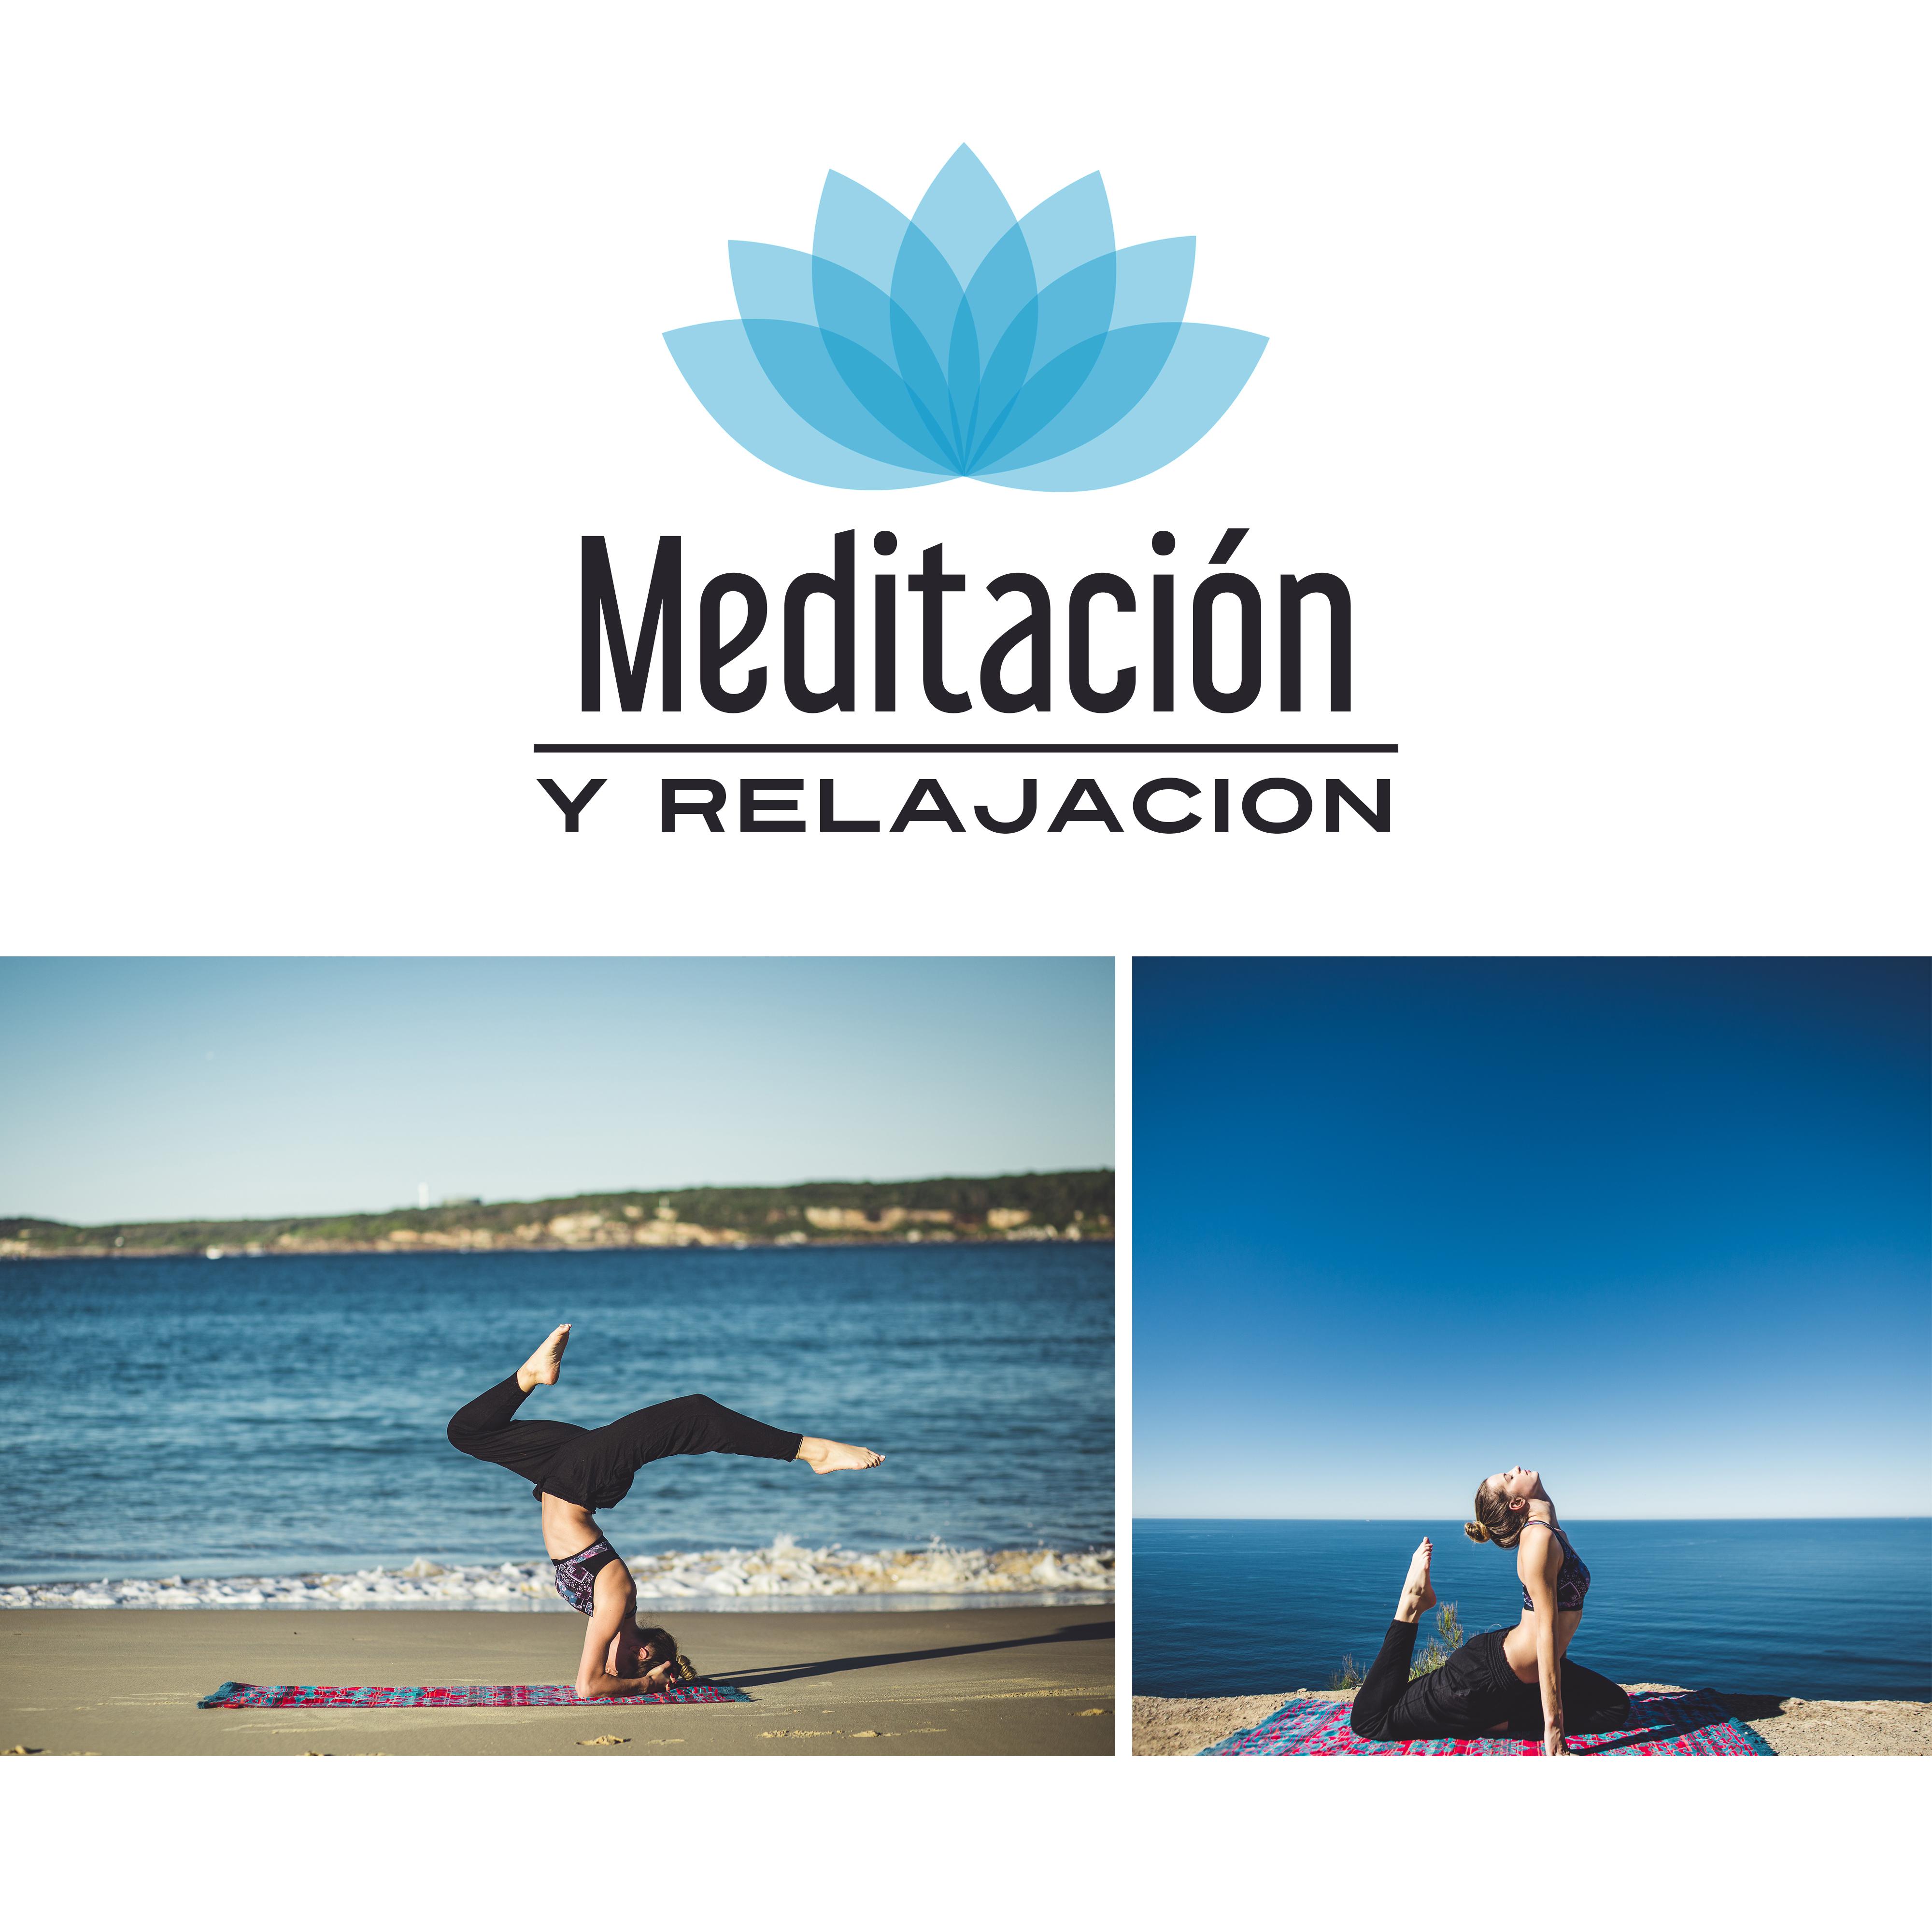 Meditacio n y Relajacion